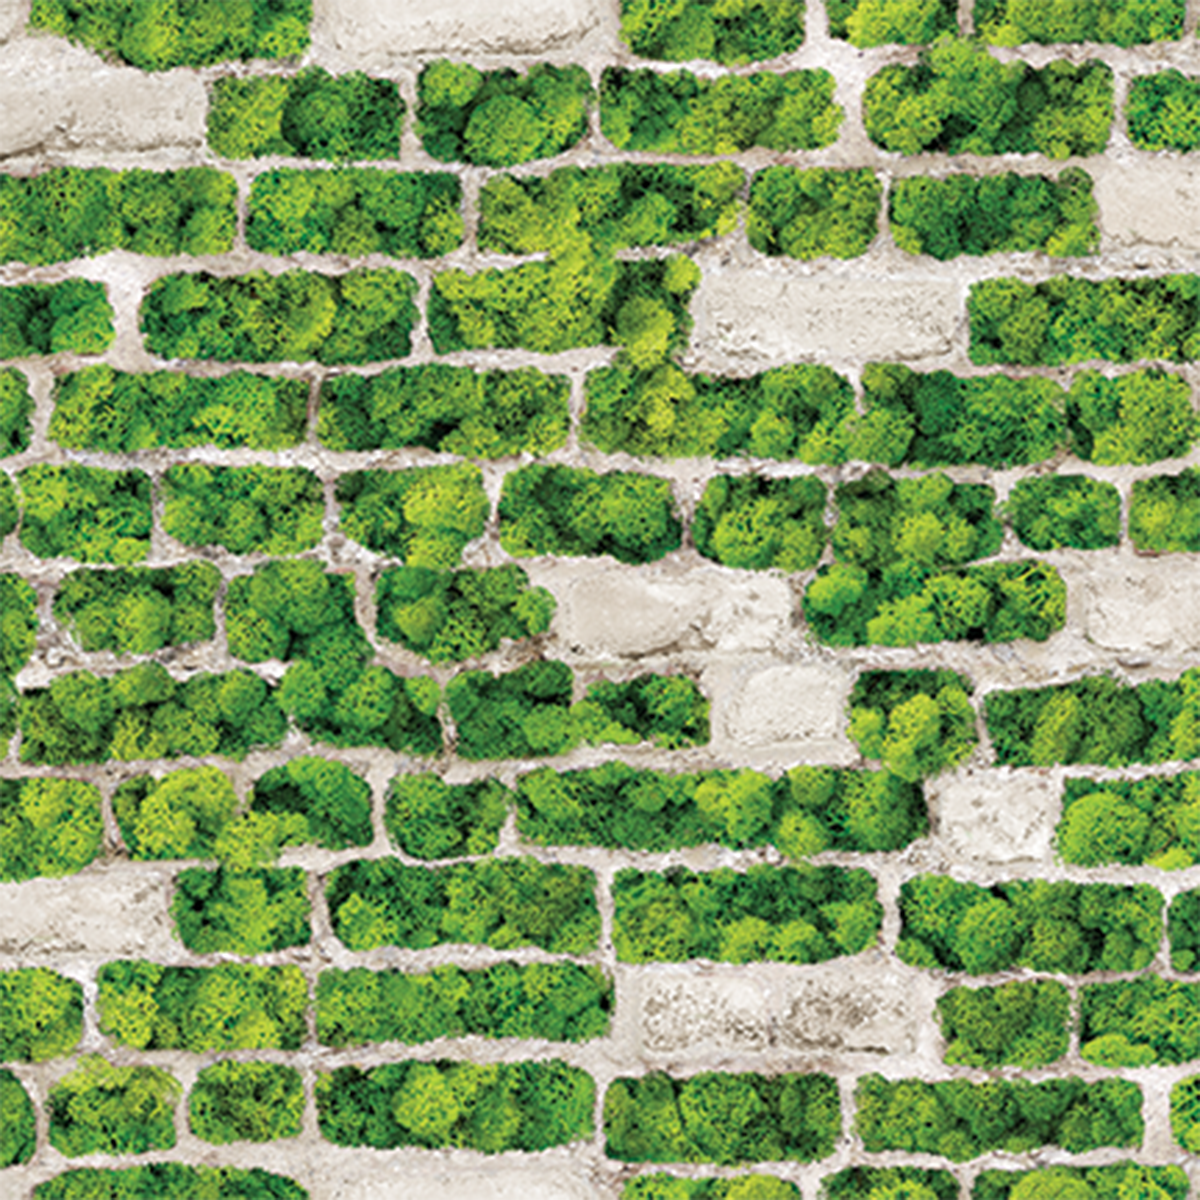 moss on bricks